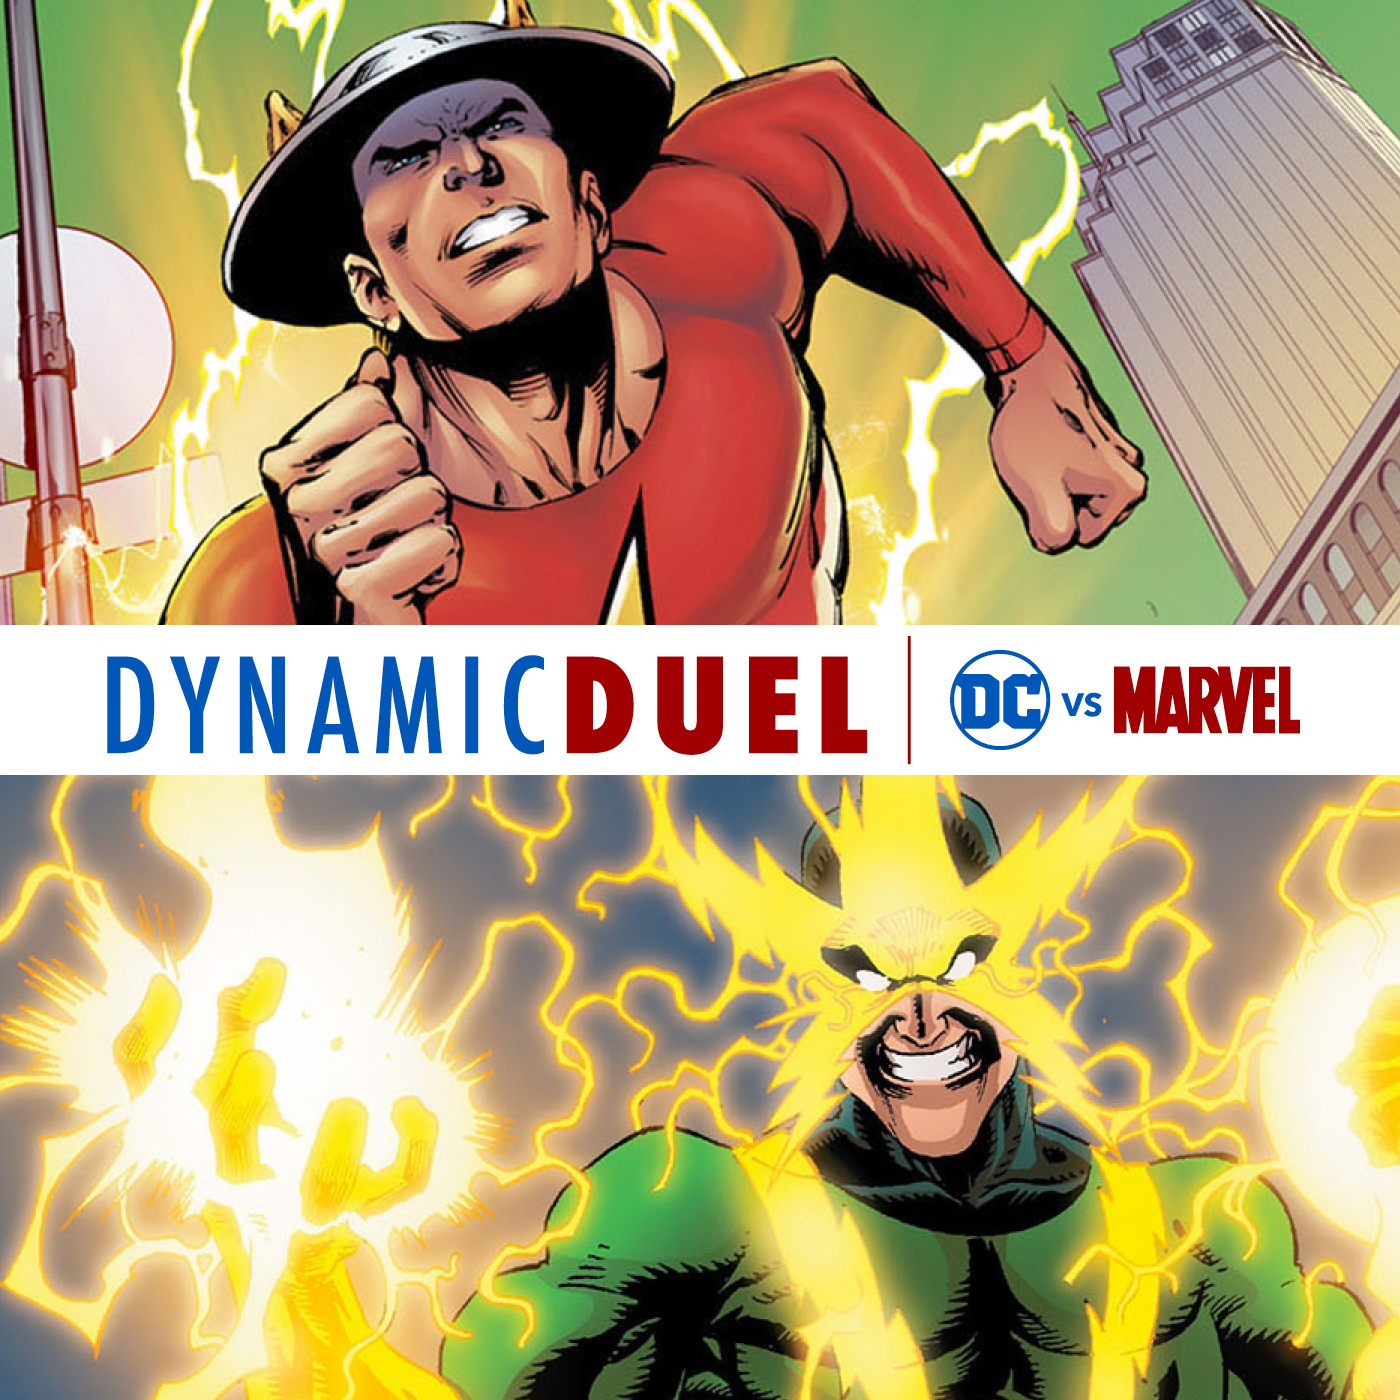 Flash (Jay Garrick) vs Electro Image